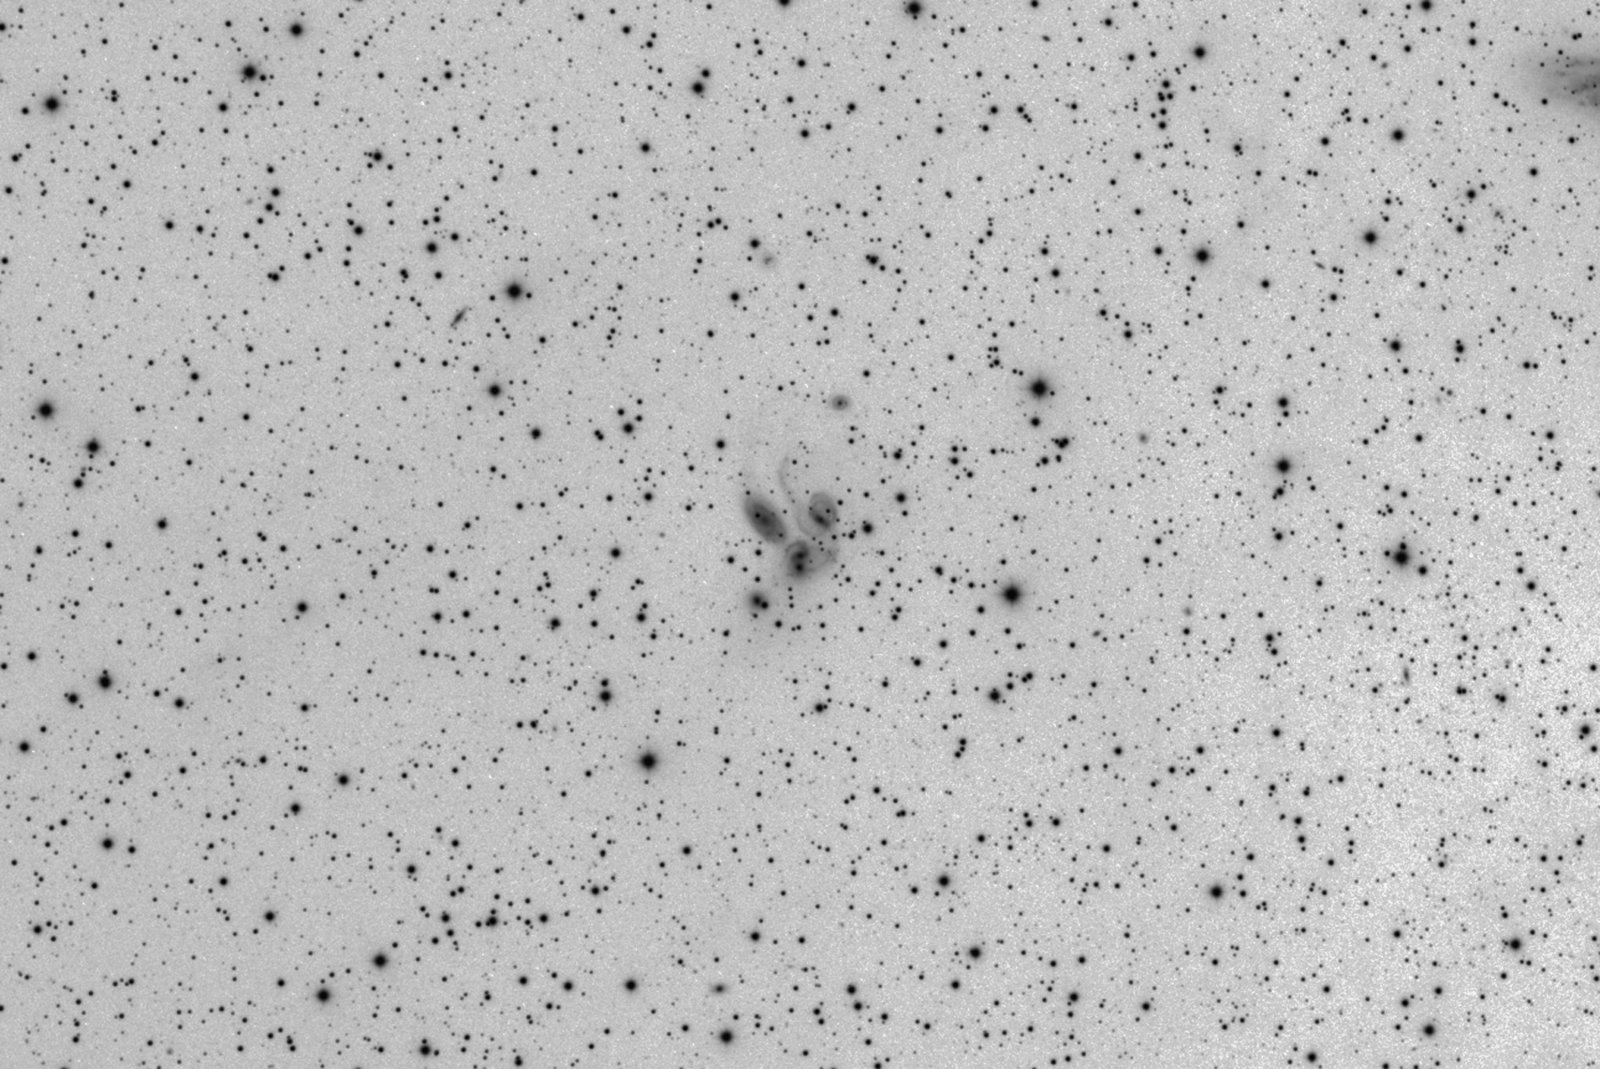 59f4af2bc3042_NGC7331kjrinv.thumb.jpg.a0c15fc380e448f8fa1b697456a7294a.jpg